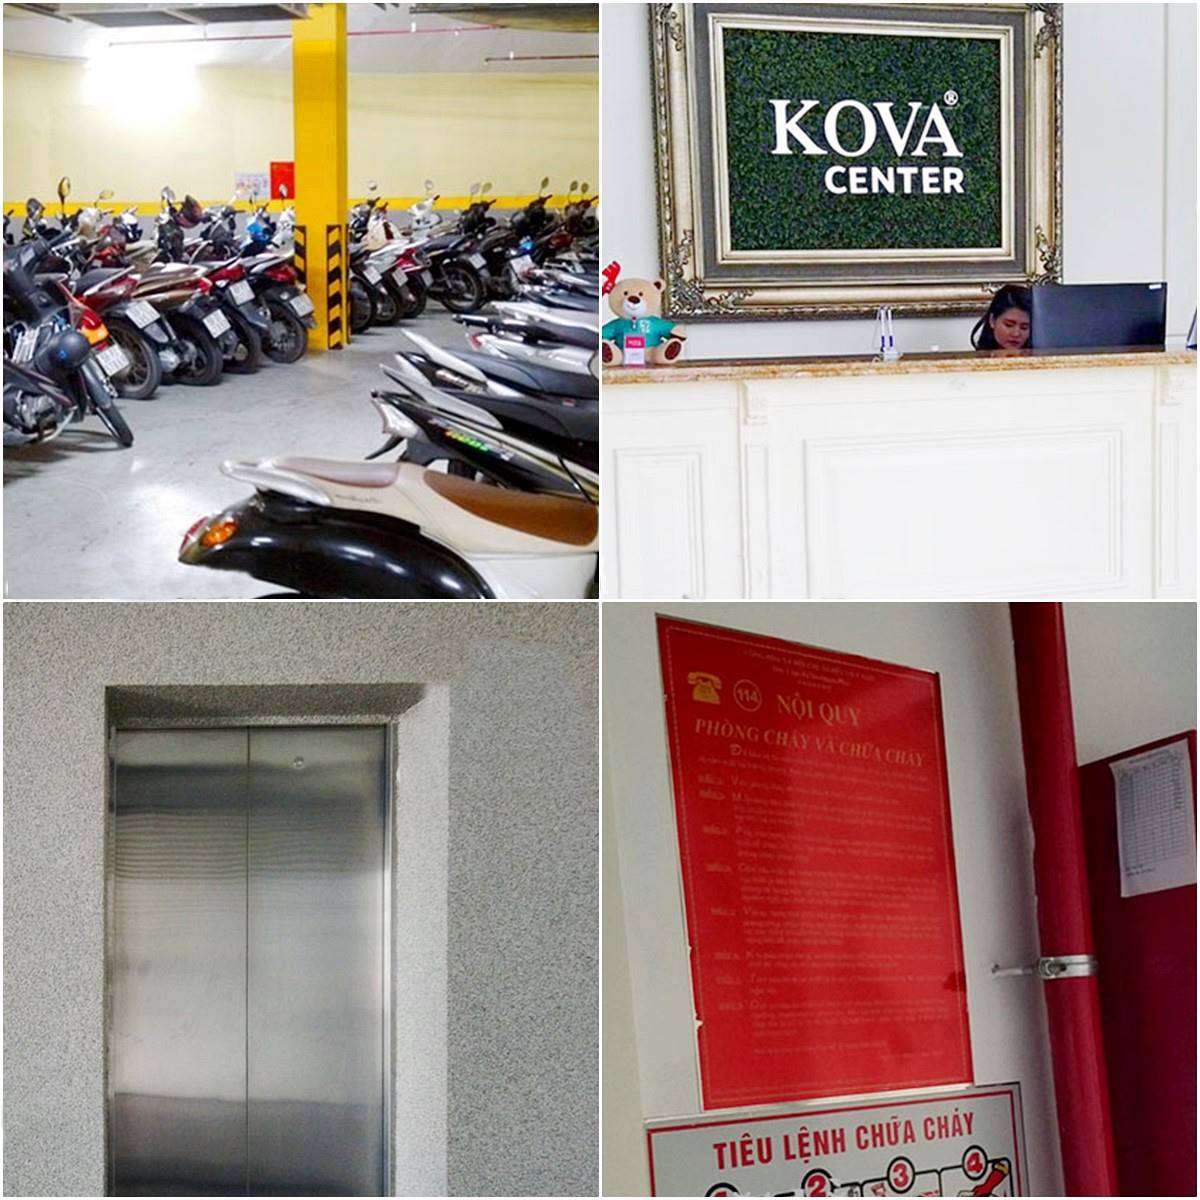 Cao ốc cho thuê văn phòng SKova Center, Nguyễn Hữu Cảnh, Quận Bình Thạnh, TPHCM - vlook.vn